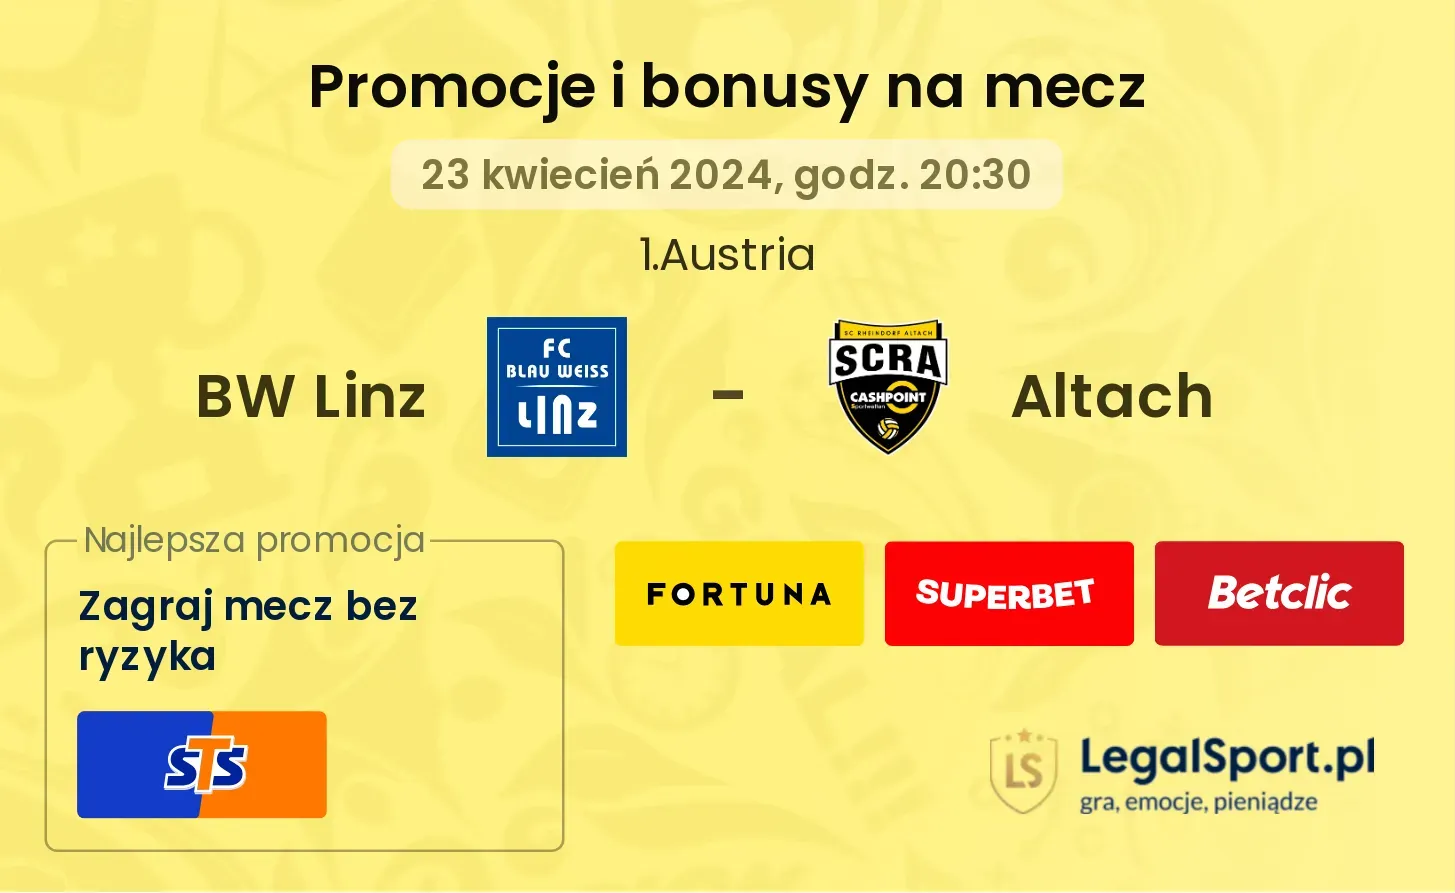 BW Linz - Altach promocje bonusy na mecz